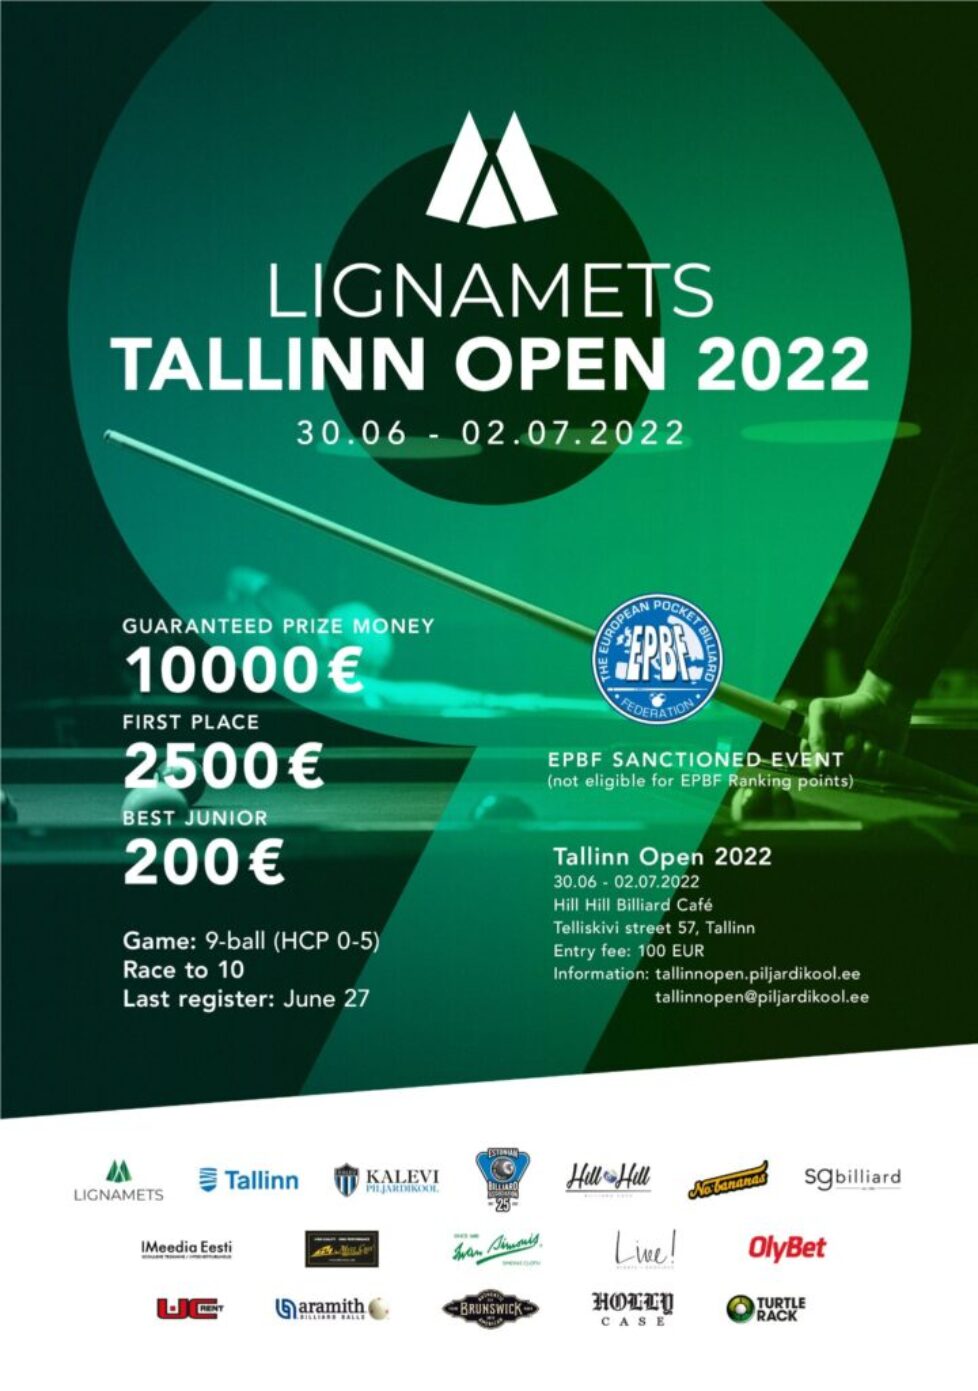 lignamets-tallinn-open-2022